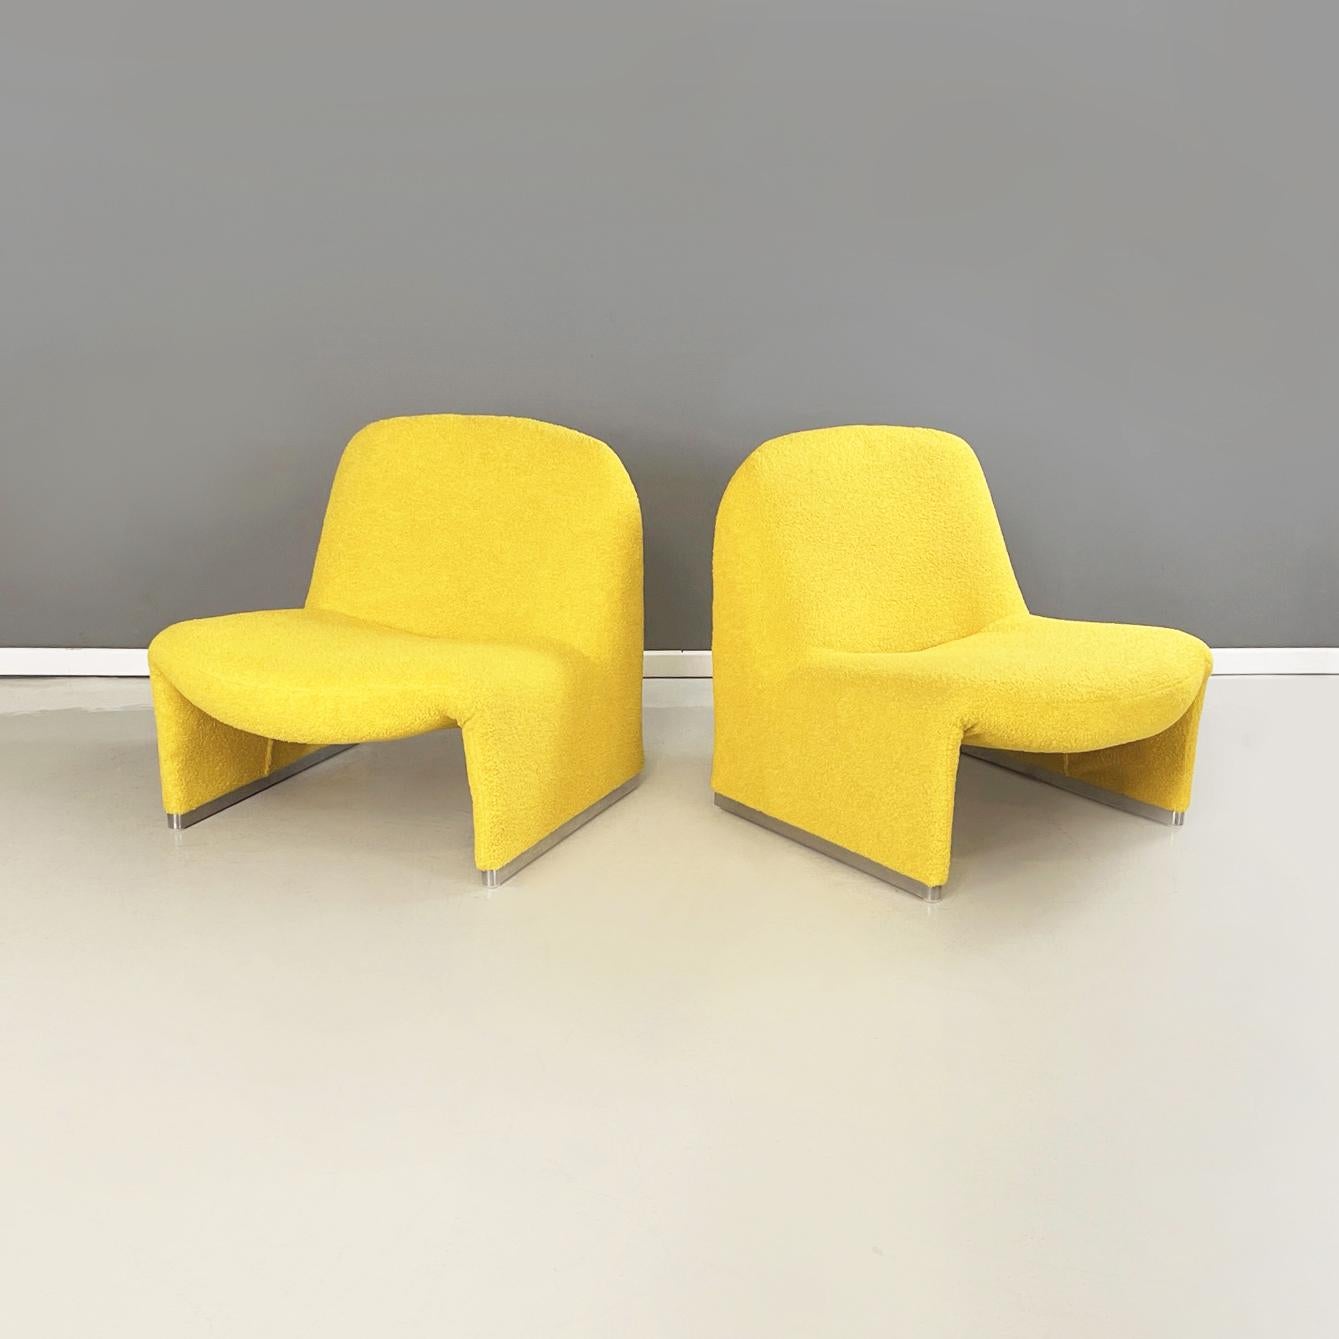 Italienische moderne gelbe Teddystoff Sessel Alky von Giancarlo Piretti für Anonima Castelli, 1970er Jahre
Paar Sessel mod. Alky in gelbem Teddy-Stoff. Die Monocoque-Struktur ist auf beiden Seiten mit satinierten Aluminiumfüßen versehen.
Produziert